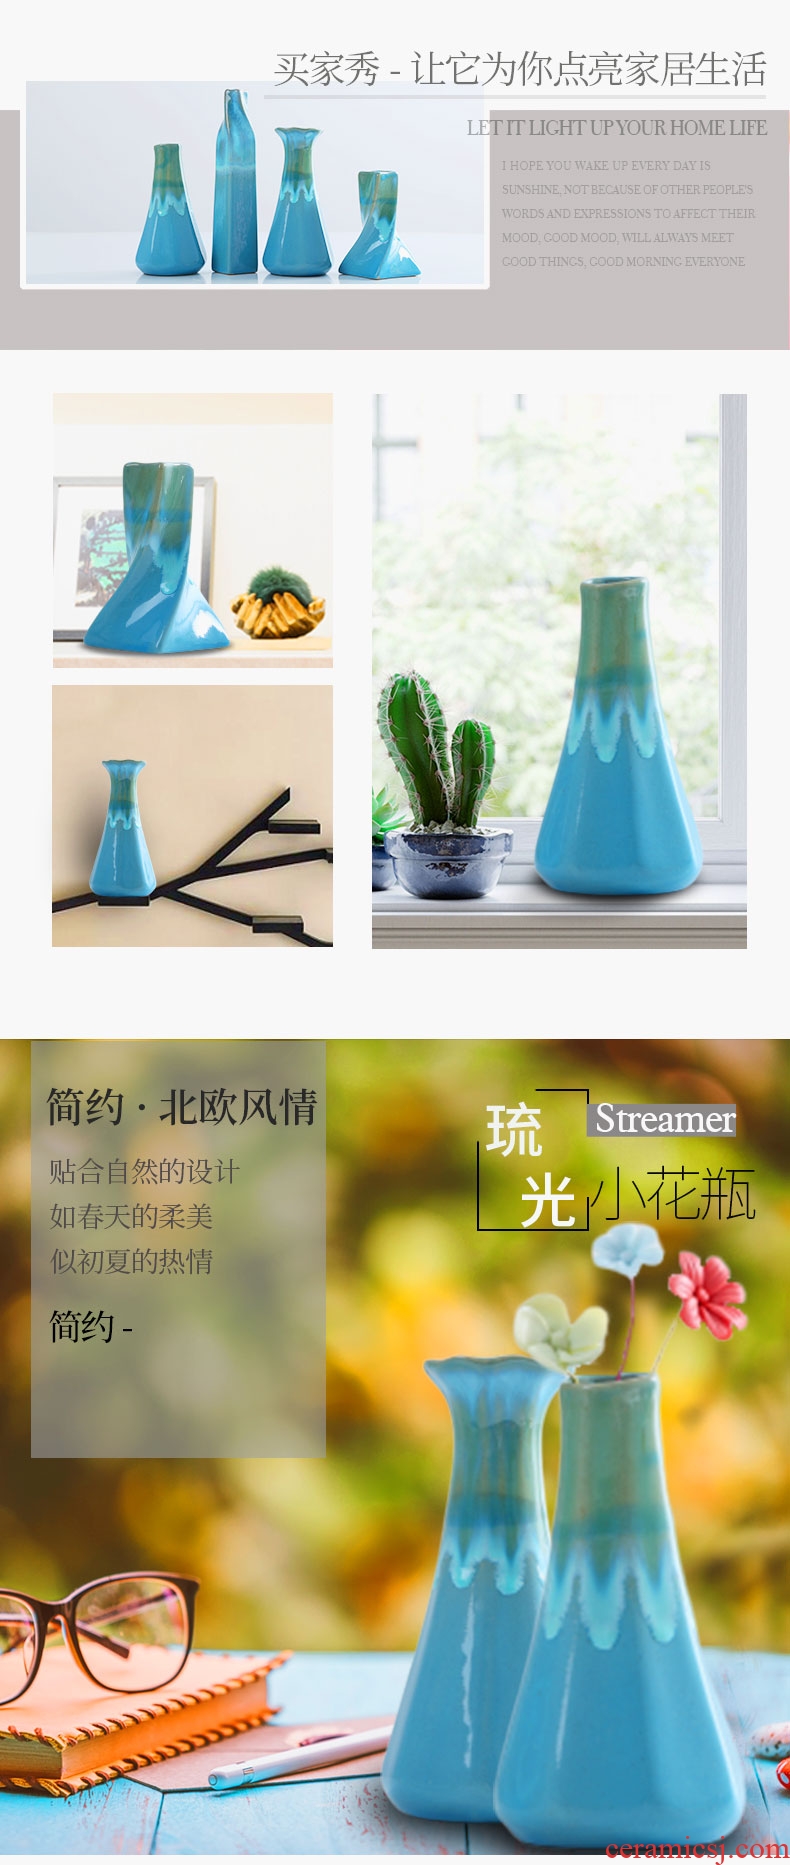 蓝色花瓶详情页-切片_07.jpg